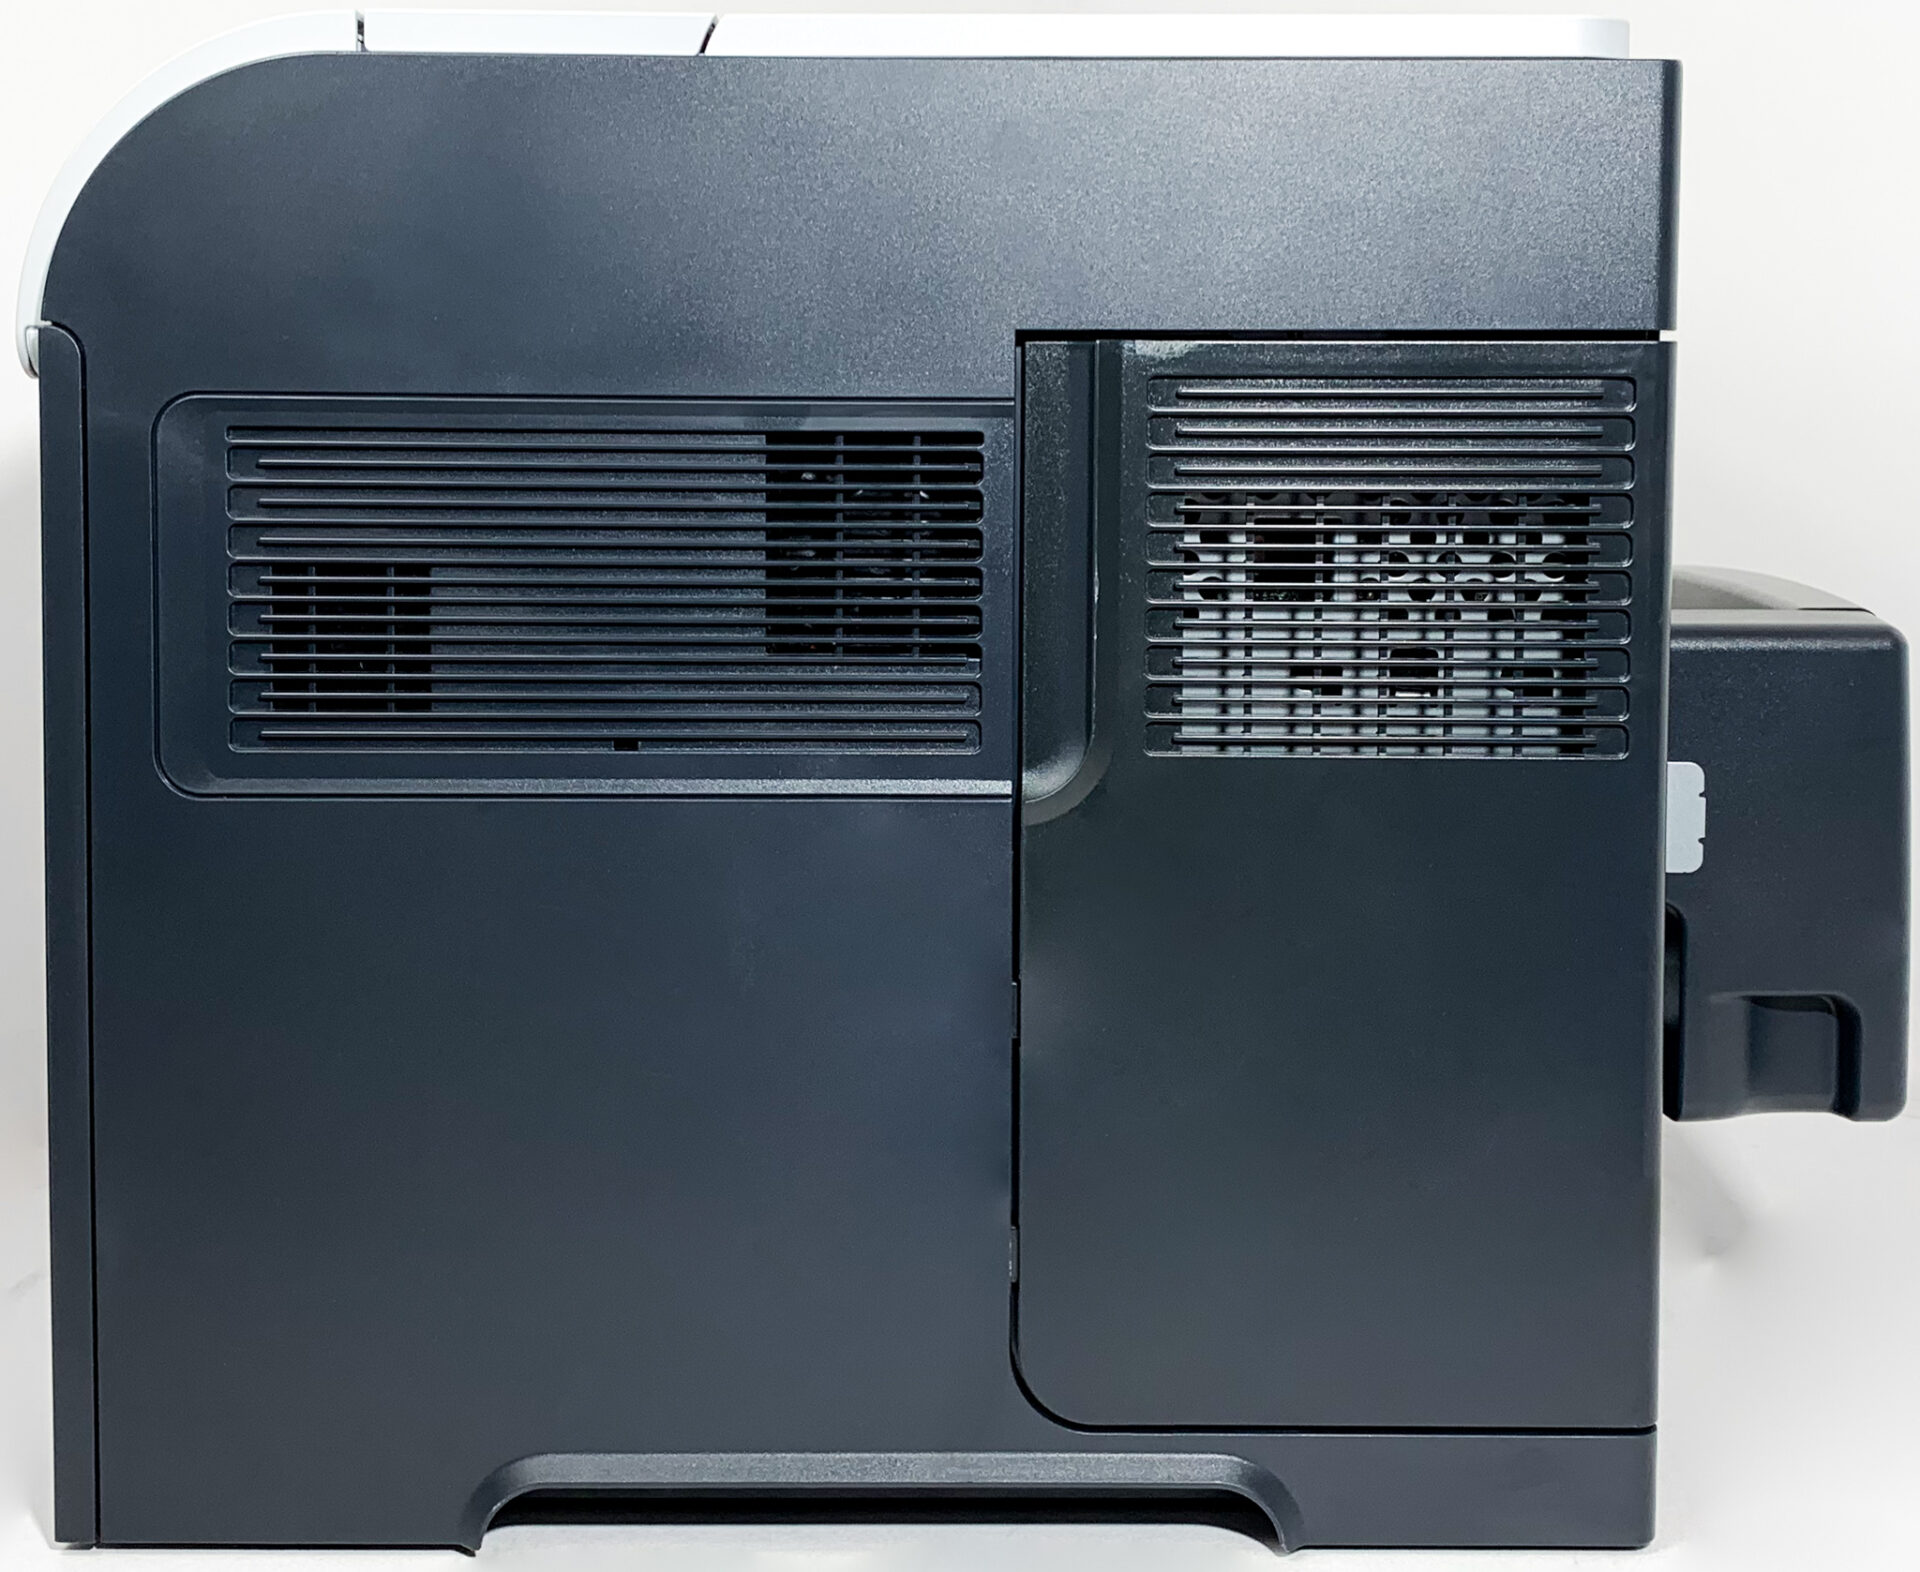 2021年春の 600 Enterprise LaserJet HP Printer 並行輸入品 (CE990A) M601dn レーザープリンター 、複合機